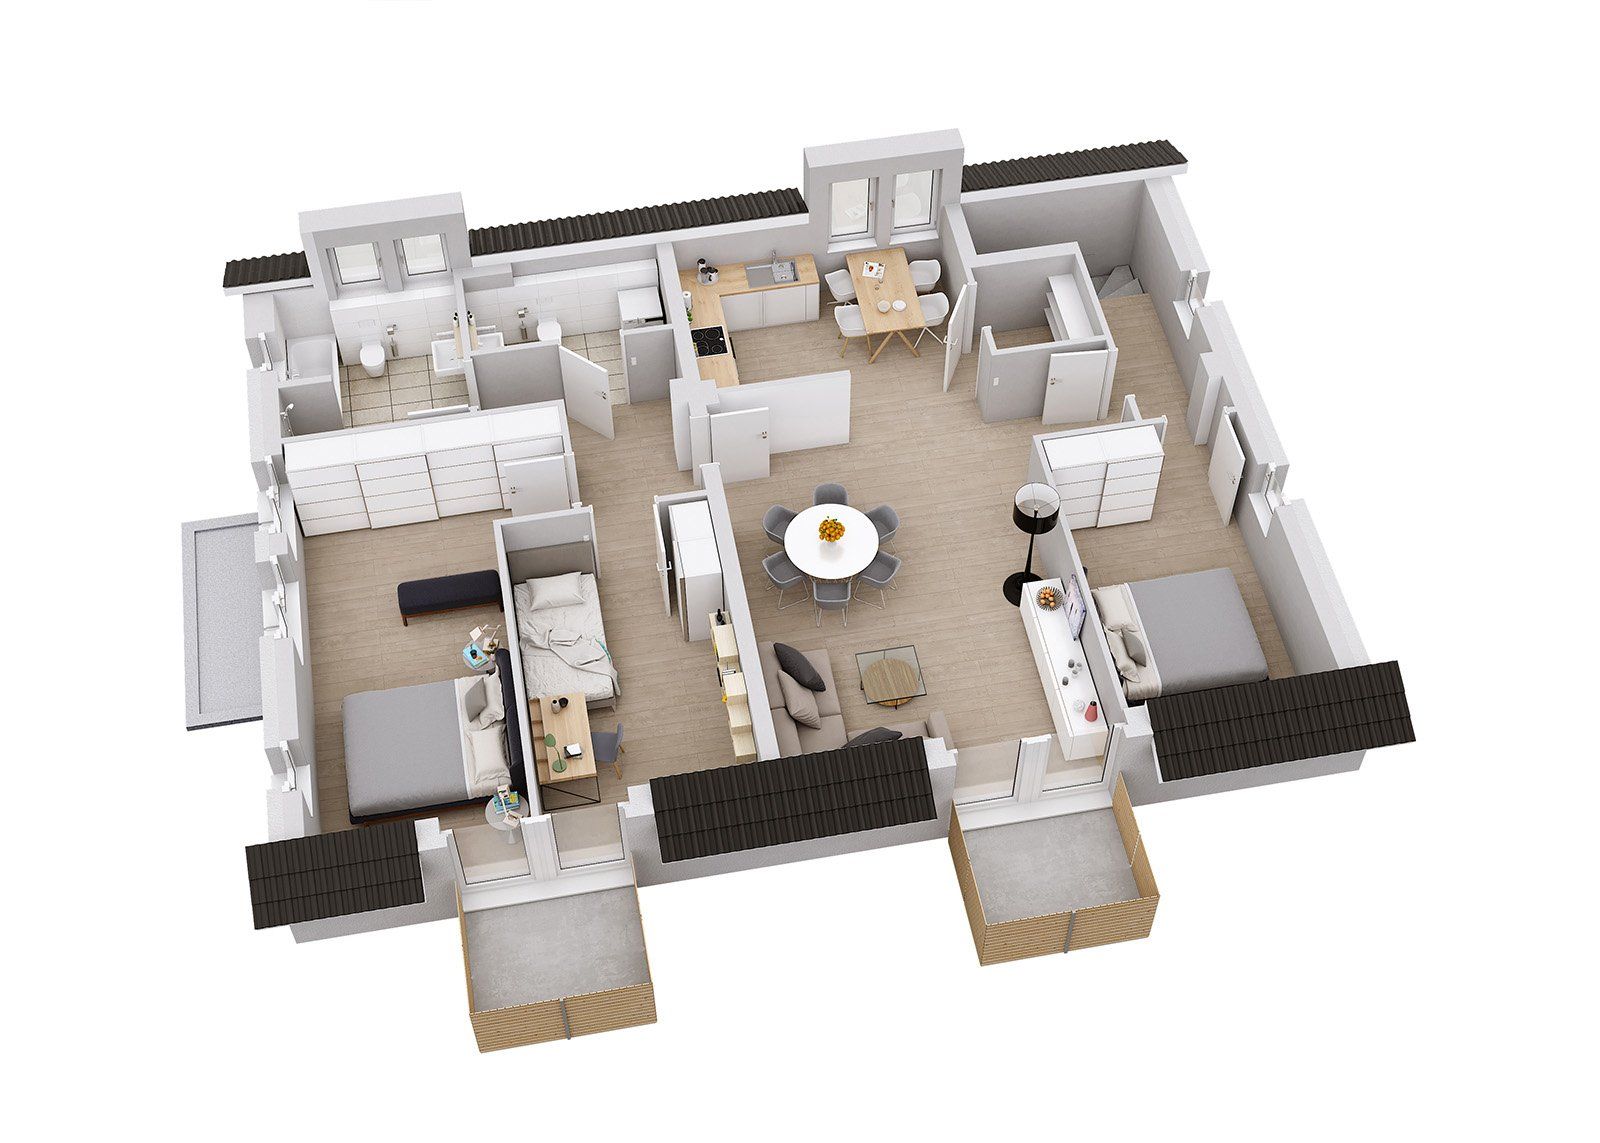 3D Grundriss einer Wohnung mit Dachgeschoss.